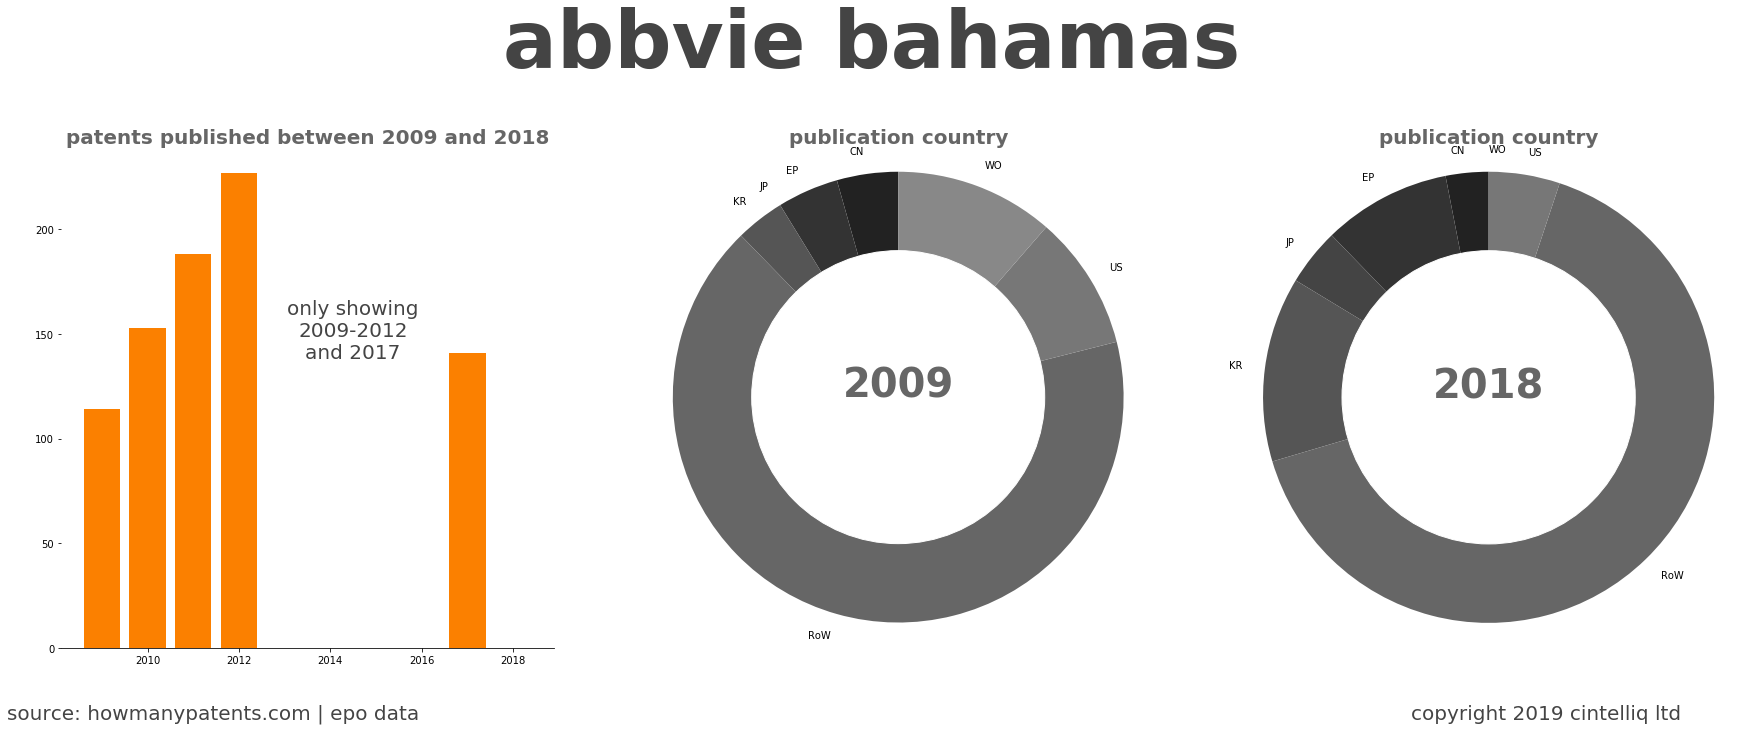 summary of patents for Abbvie Bahamas